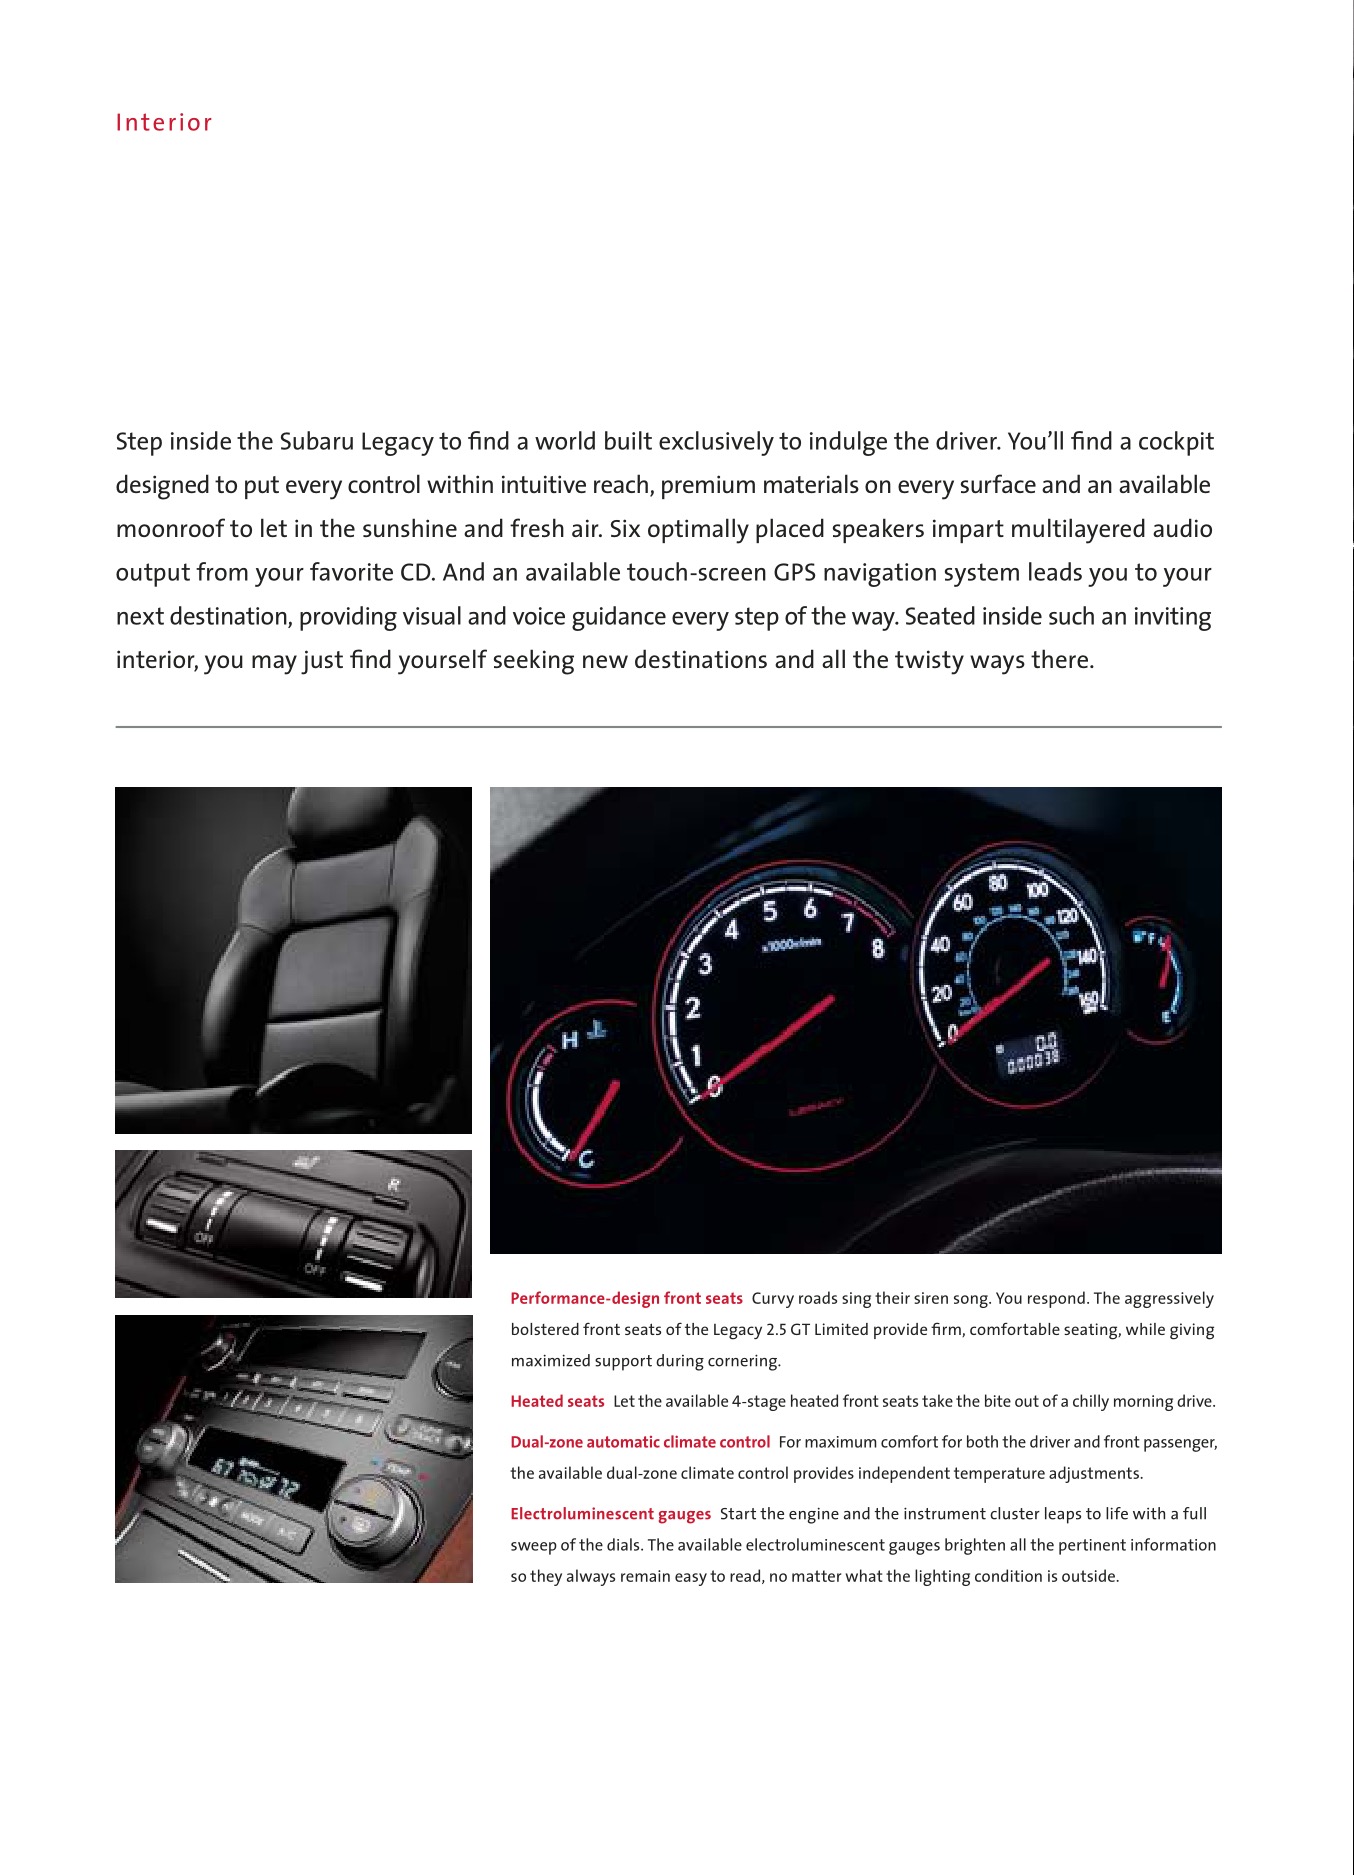 2006 Subaru Legacy Brochure Page 15